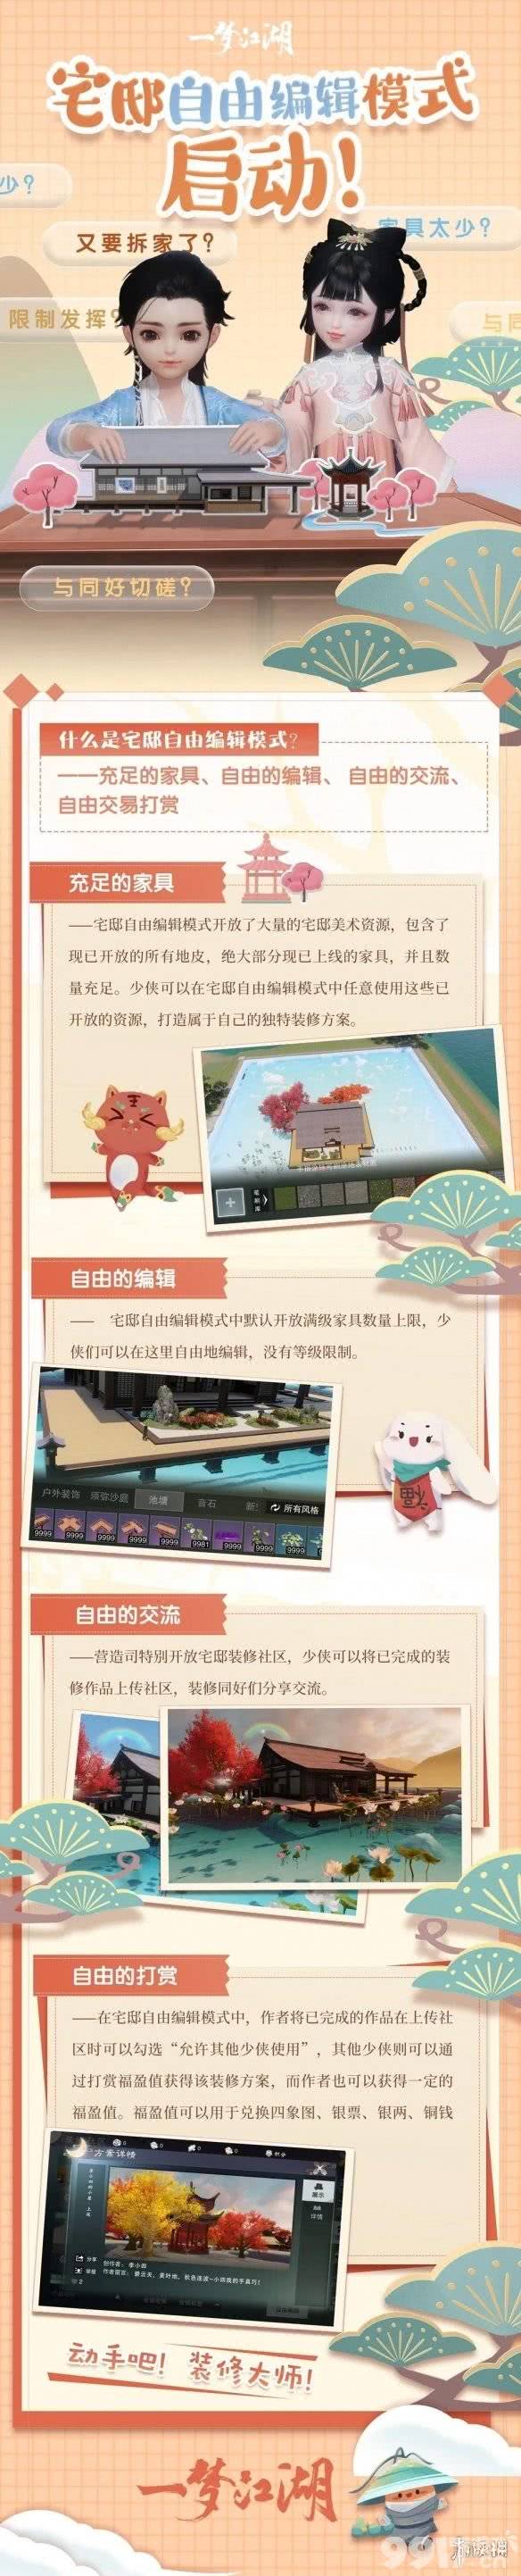 一梦江湖11月27日玩法内容更新了什么 一梦江湖11月27日玩法内容更新一览_9917手游